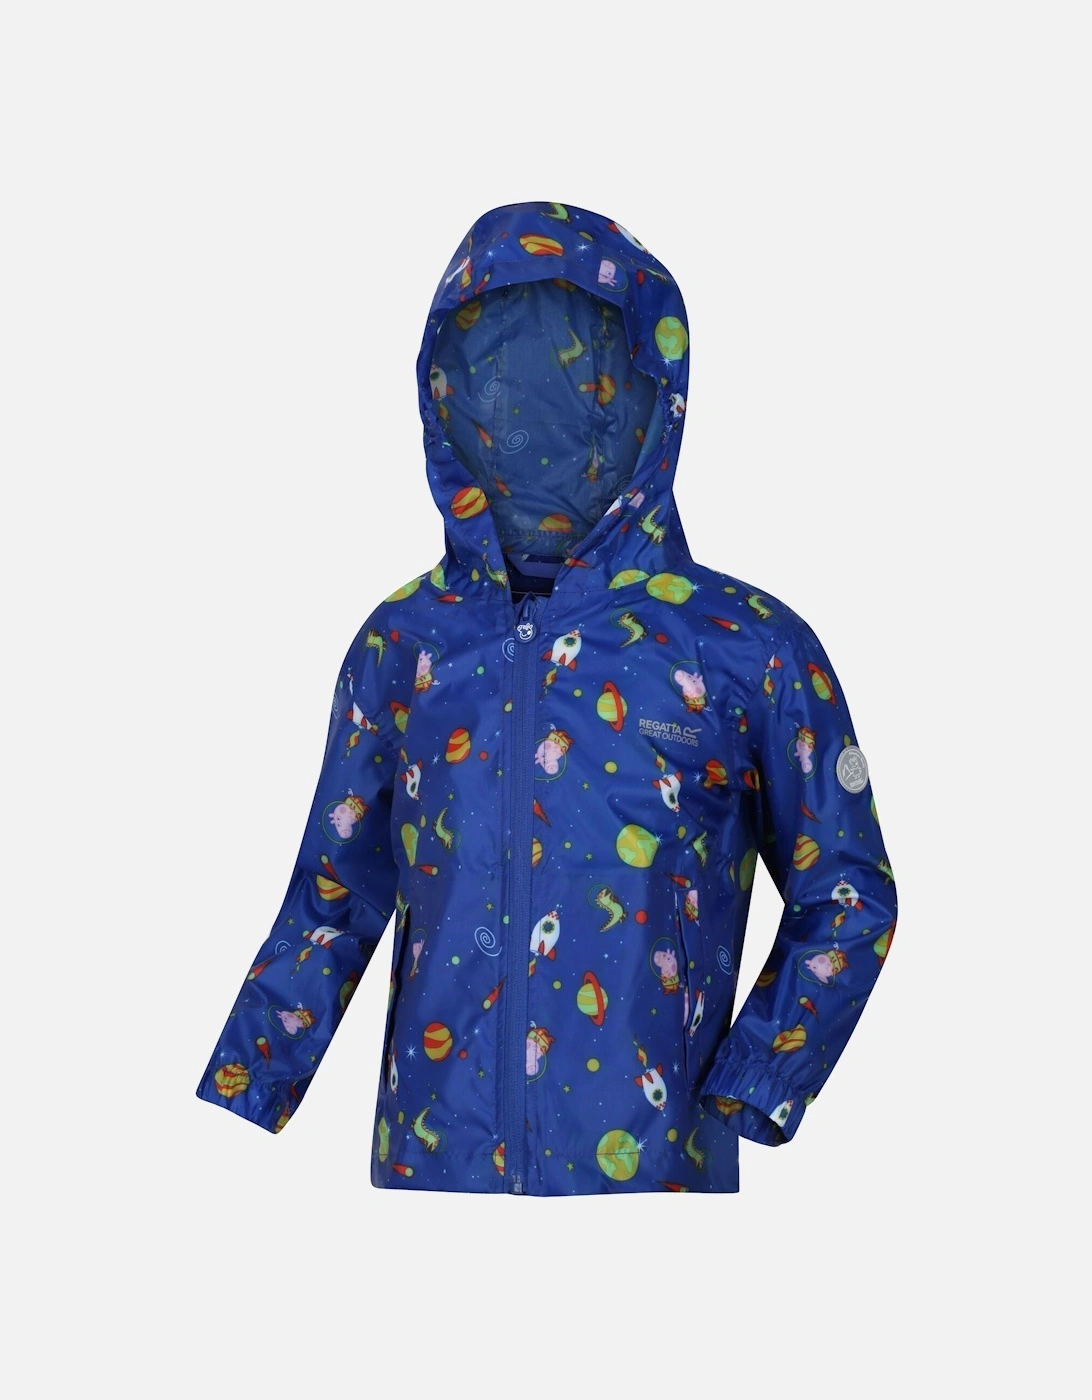 Childrens/Kids Peppa Pig Cosmic Packaway Raincoat